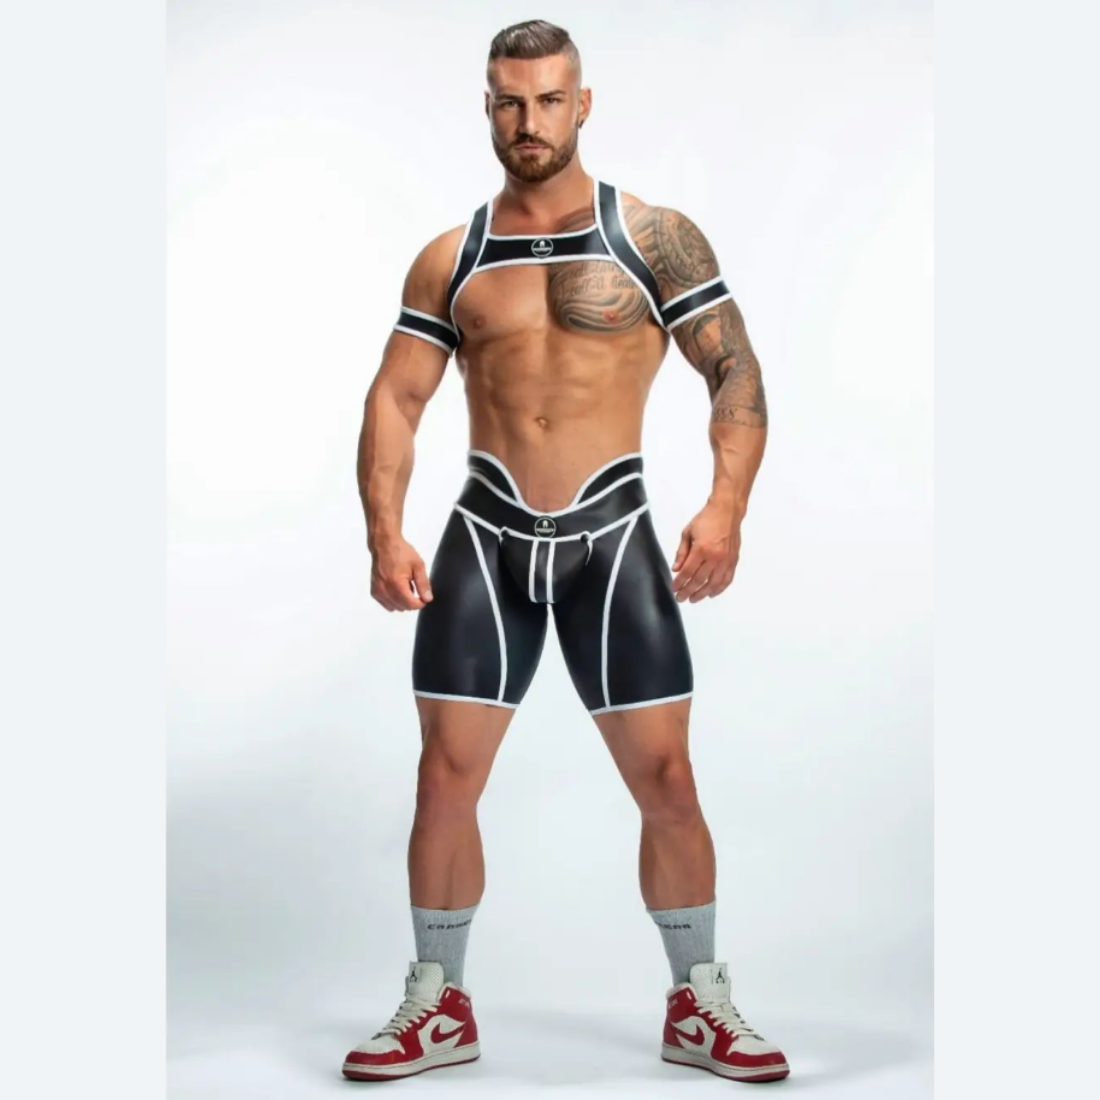 Unieke zwarte short met hoge tailleband en witte biezen, ontworpen door het Italiaanse modehuis Sparta’s Harness perfect voor gay mannen en te koop bij Flavourez.